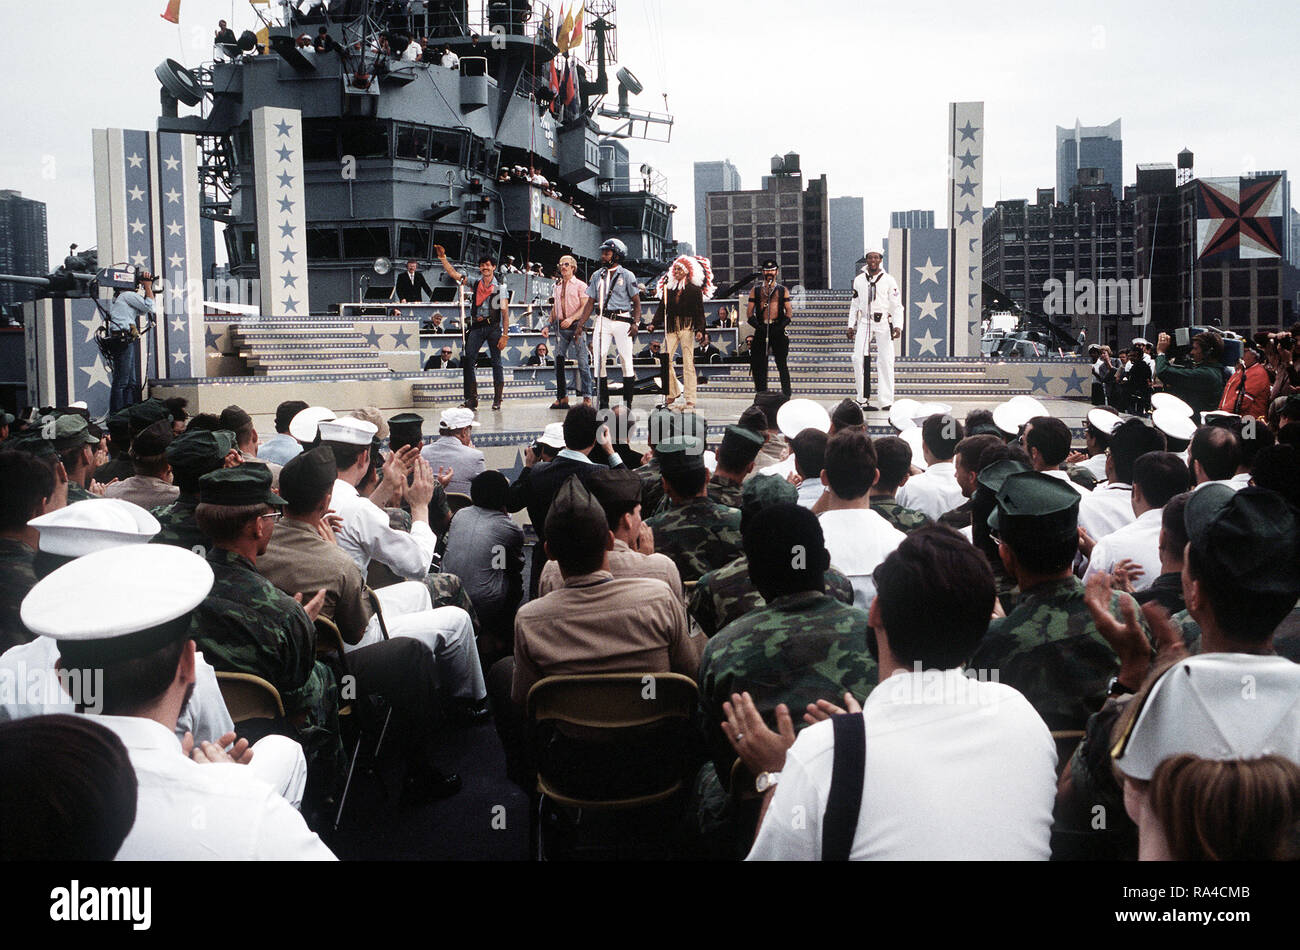 1979 - Während der Bob Hope Show an Bord der Amphibisches Schiff USS Iwo Jima (LPH-2), der "Village People" singen Gruppe singt "YMCA". Schiff und Besatzung haben gerade ein Feld Übung in Puerto Rico abgeschlossen. Stockfoto